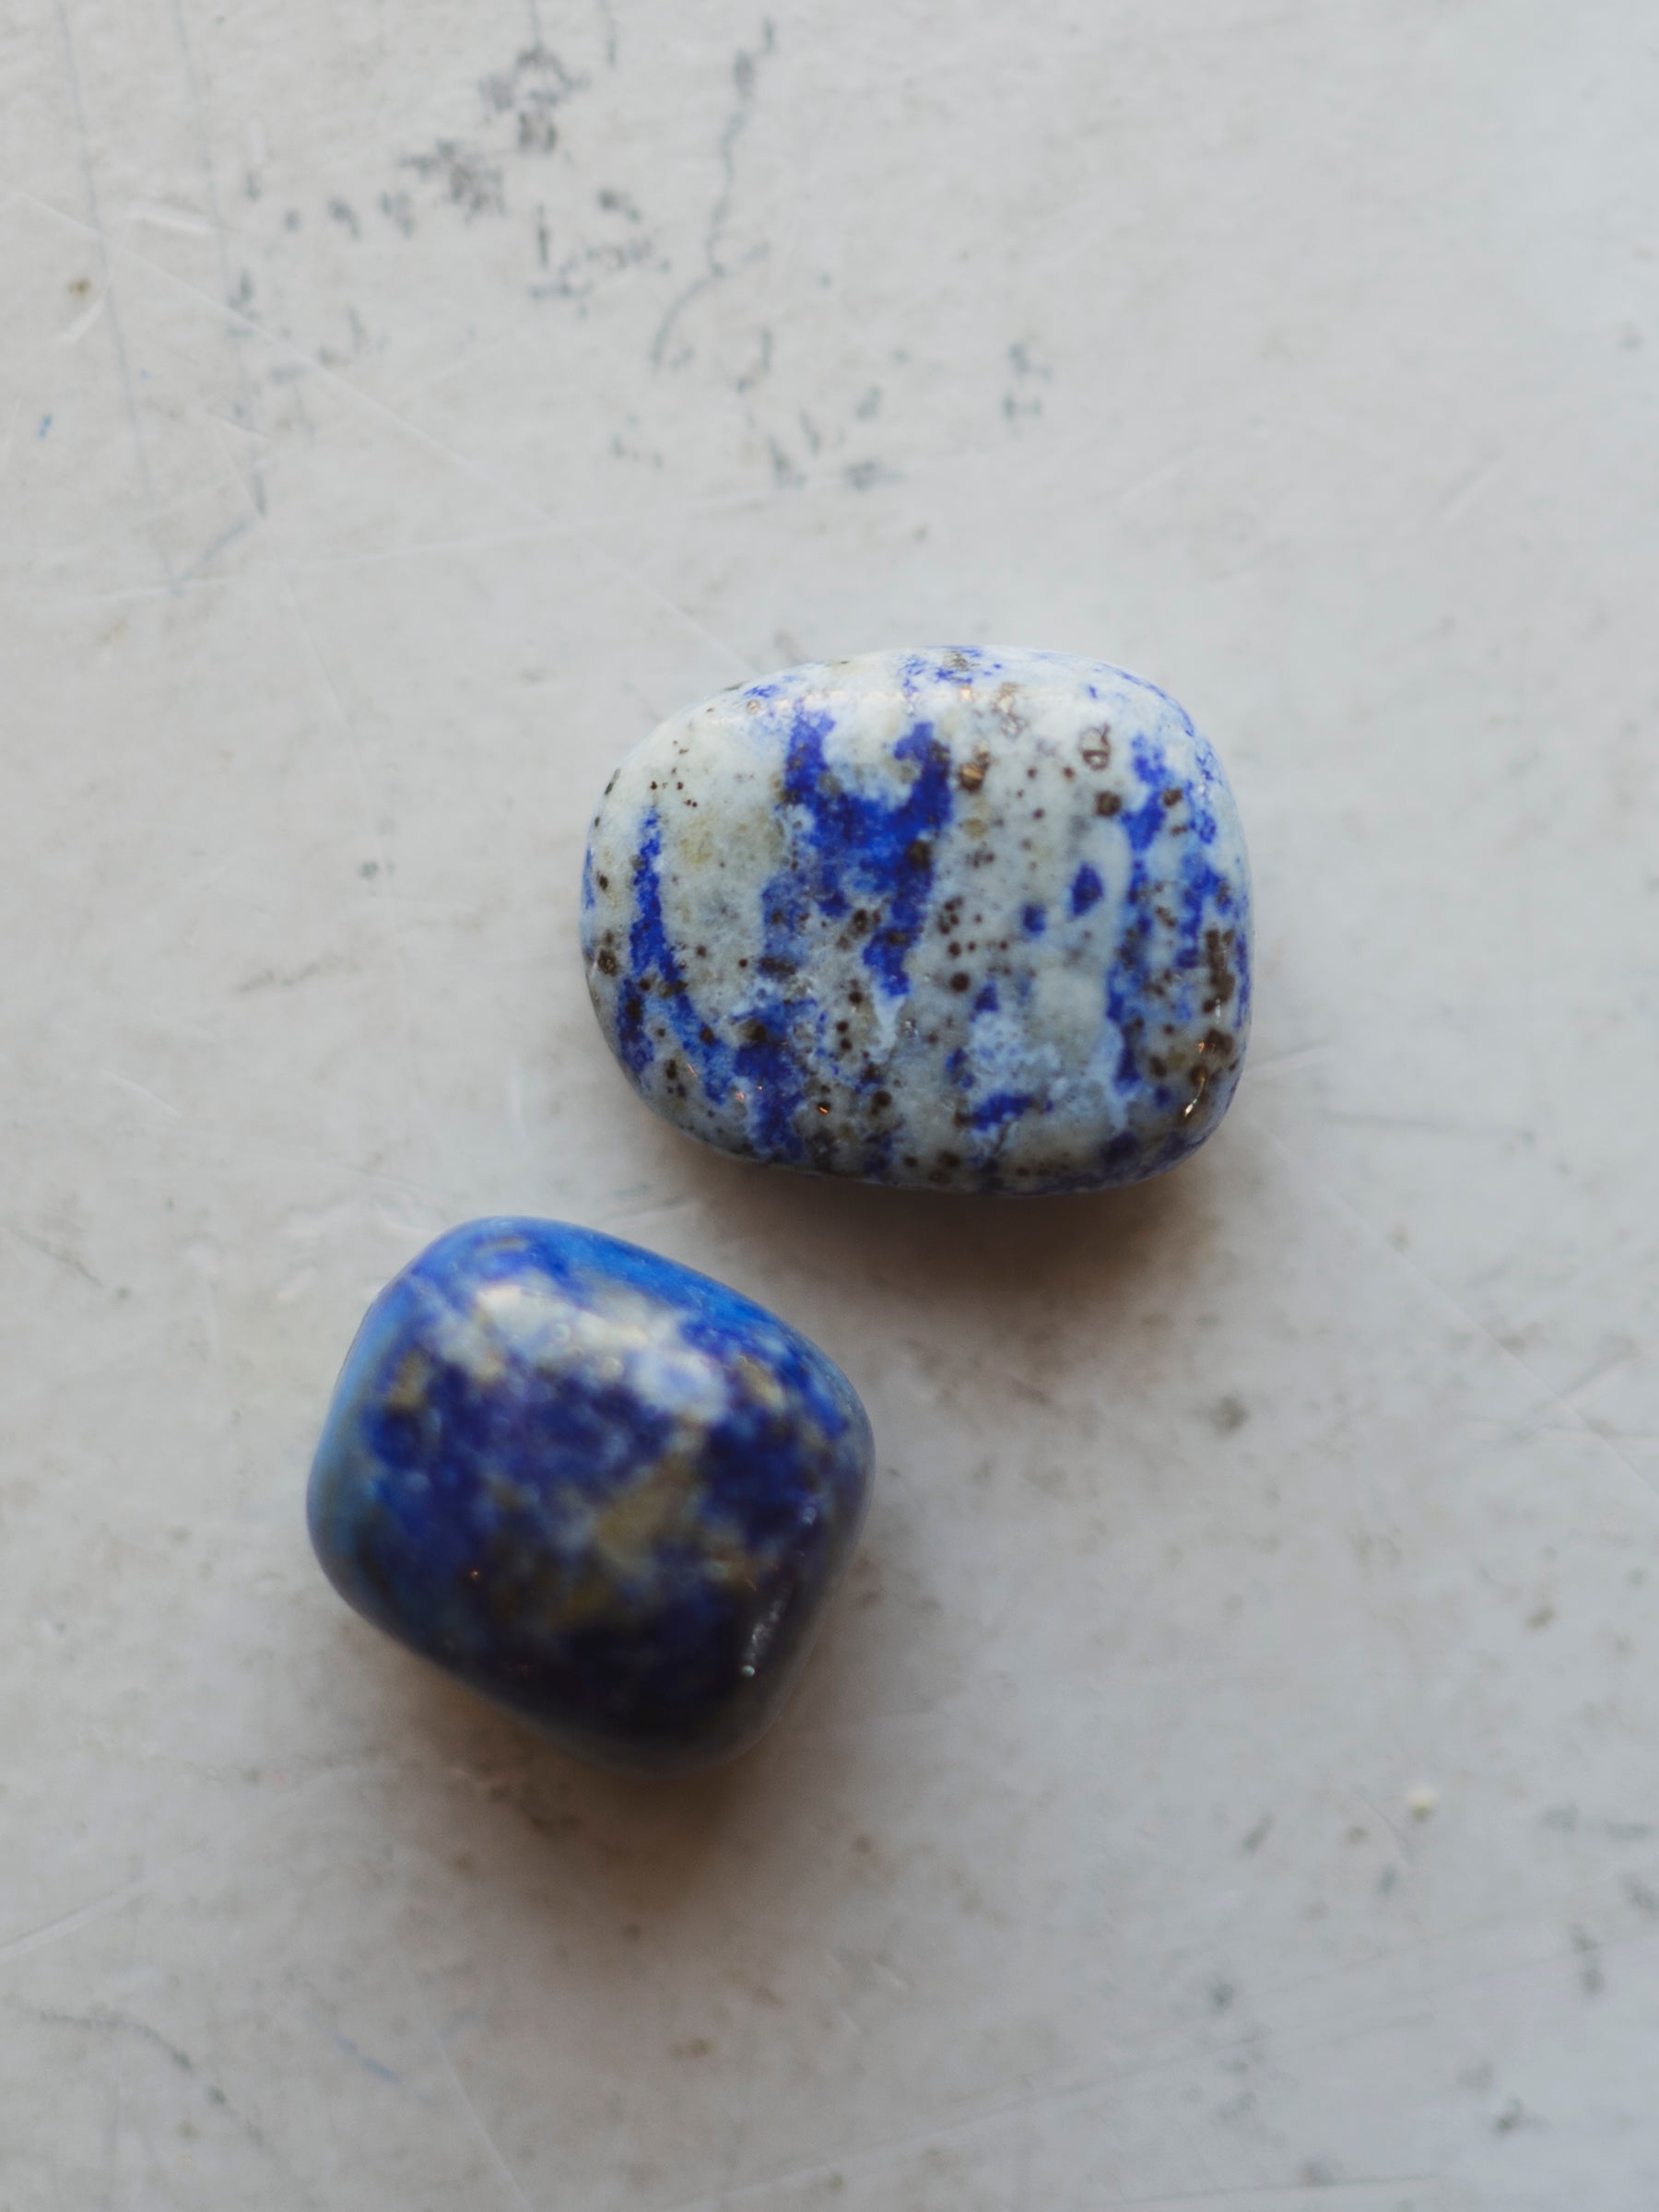 0.5-1" Polished Lapis Lazuli, BKRM580